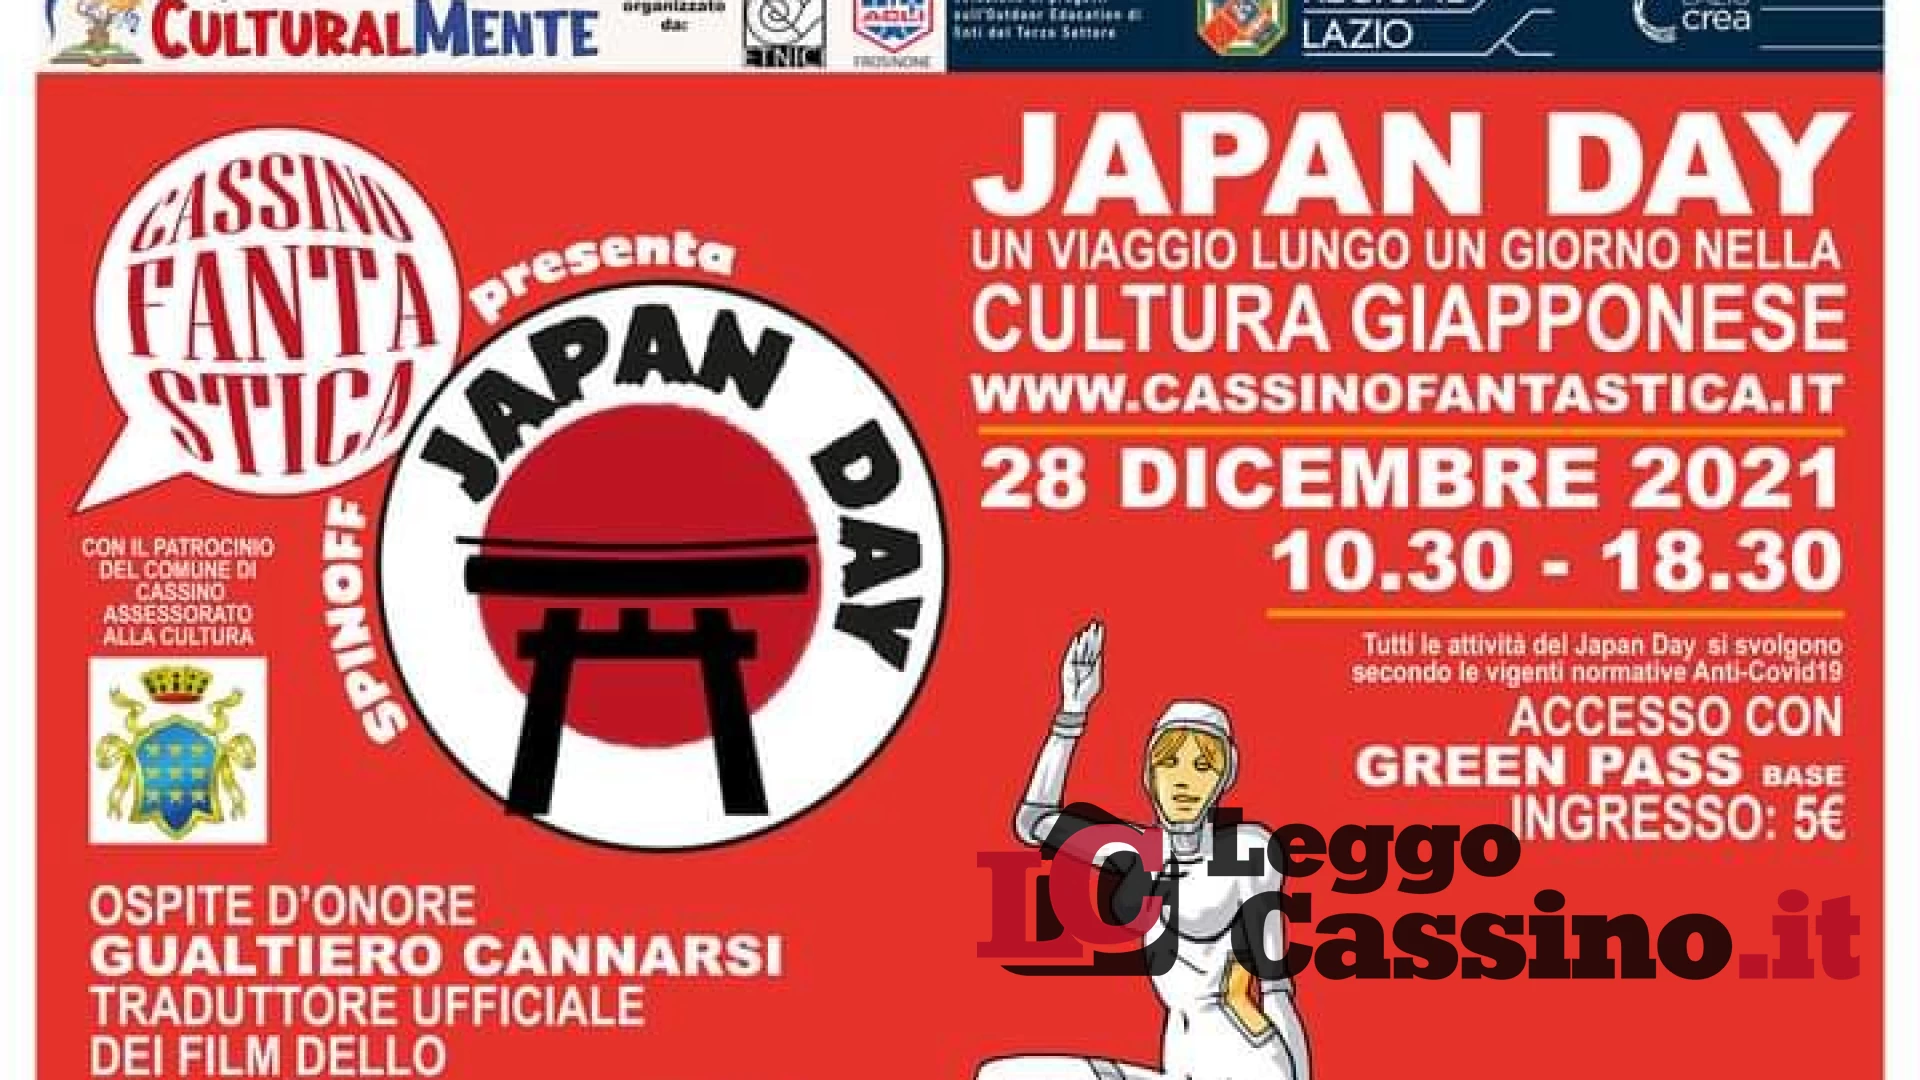 Japan Day, un viaggio lungo un giorno nella Cultura Giapponese